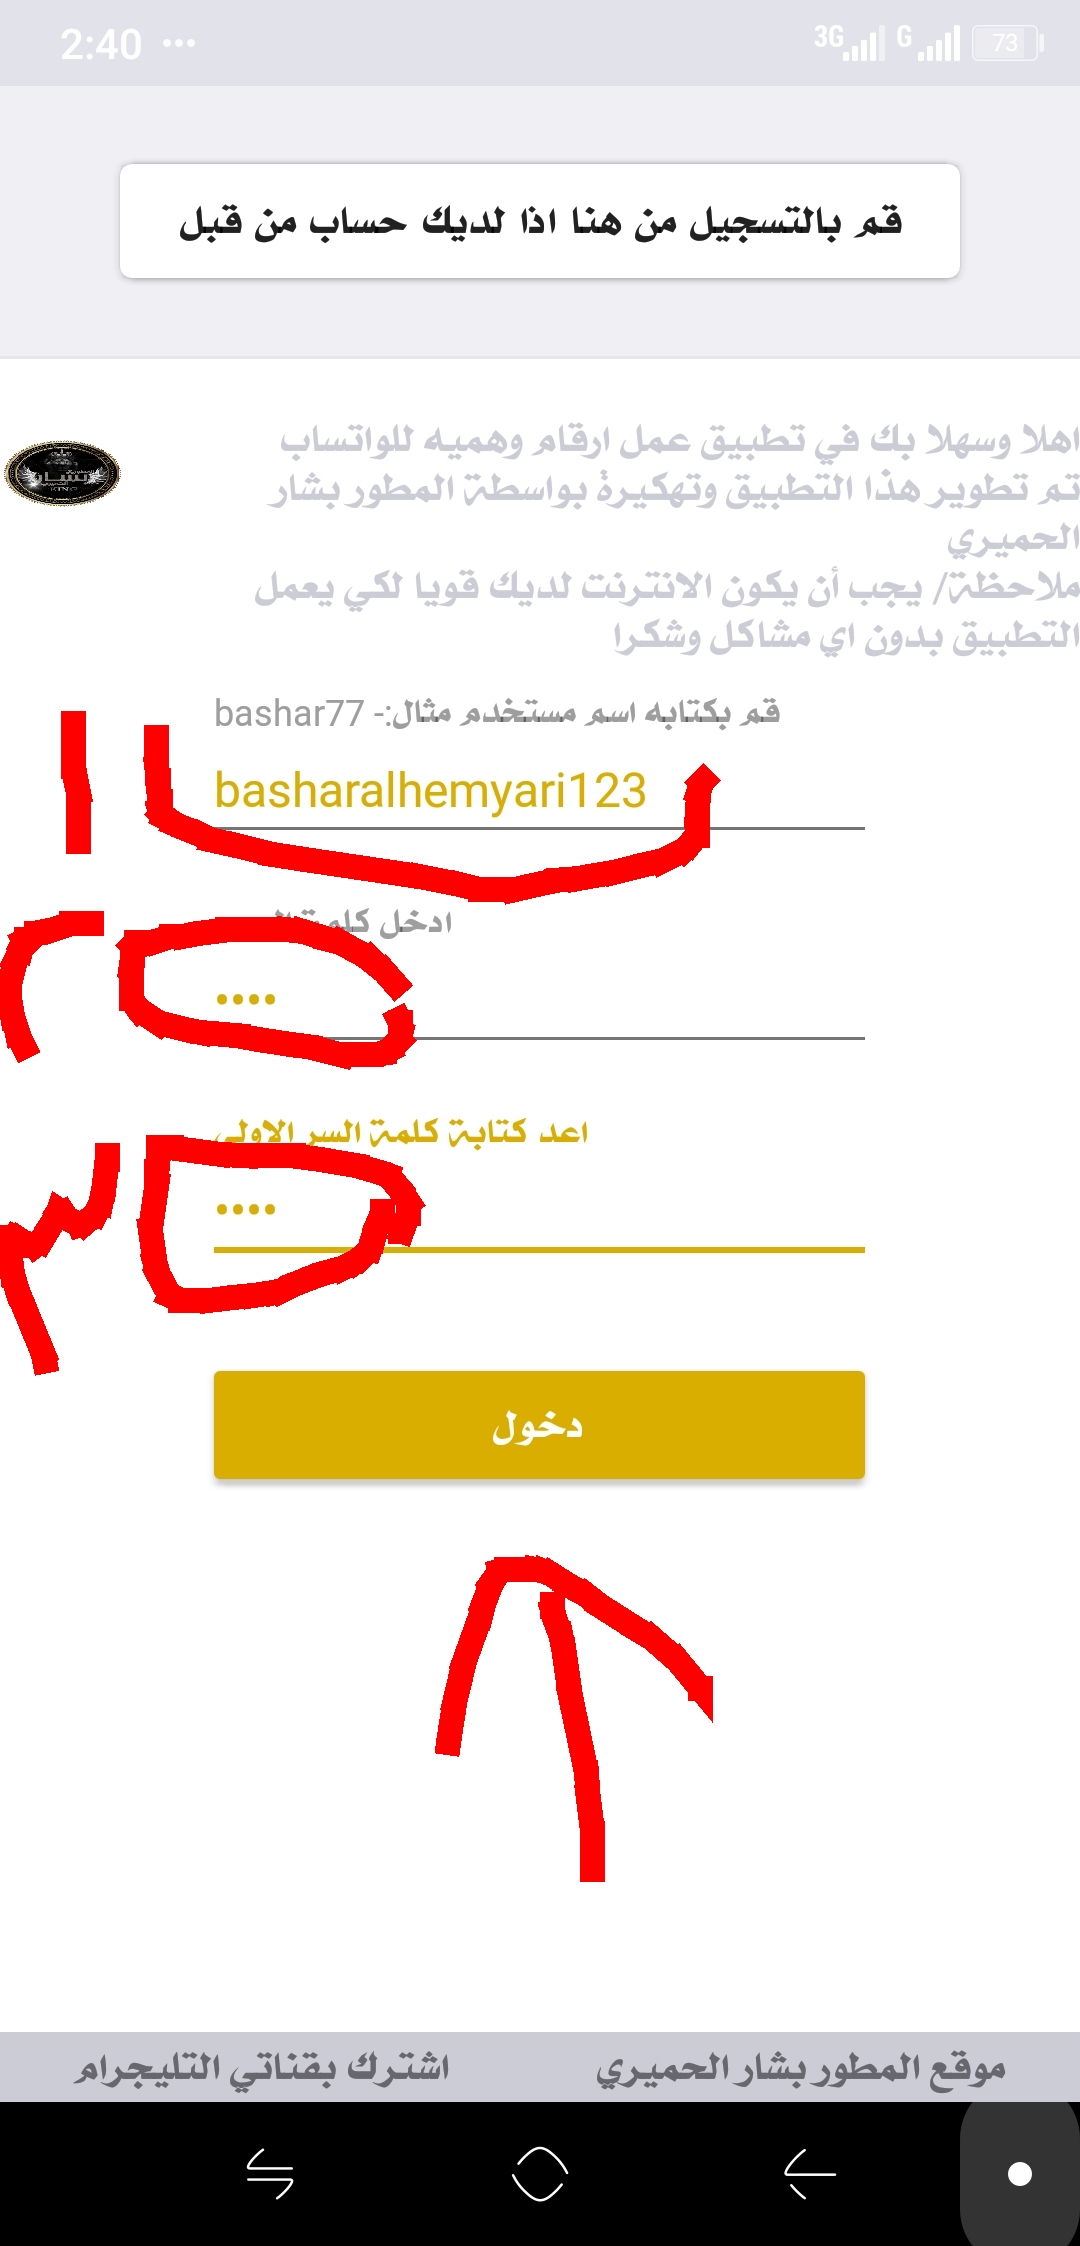 تحميل وشرح تطبيق Safeum مهكر بالعربي وكيفية الحصول على رقم وهمي